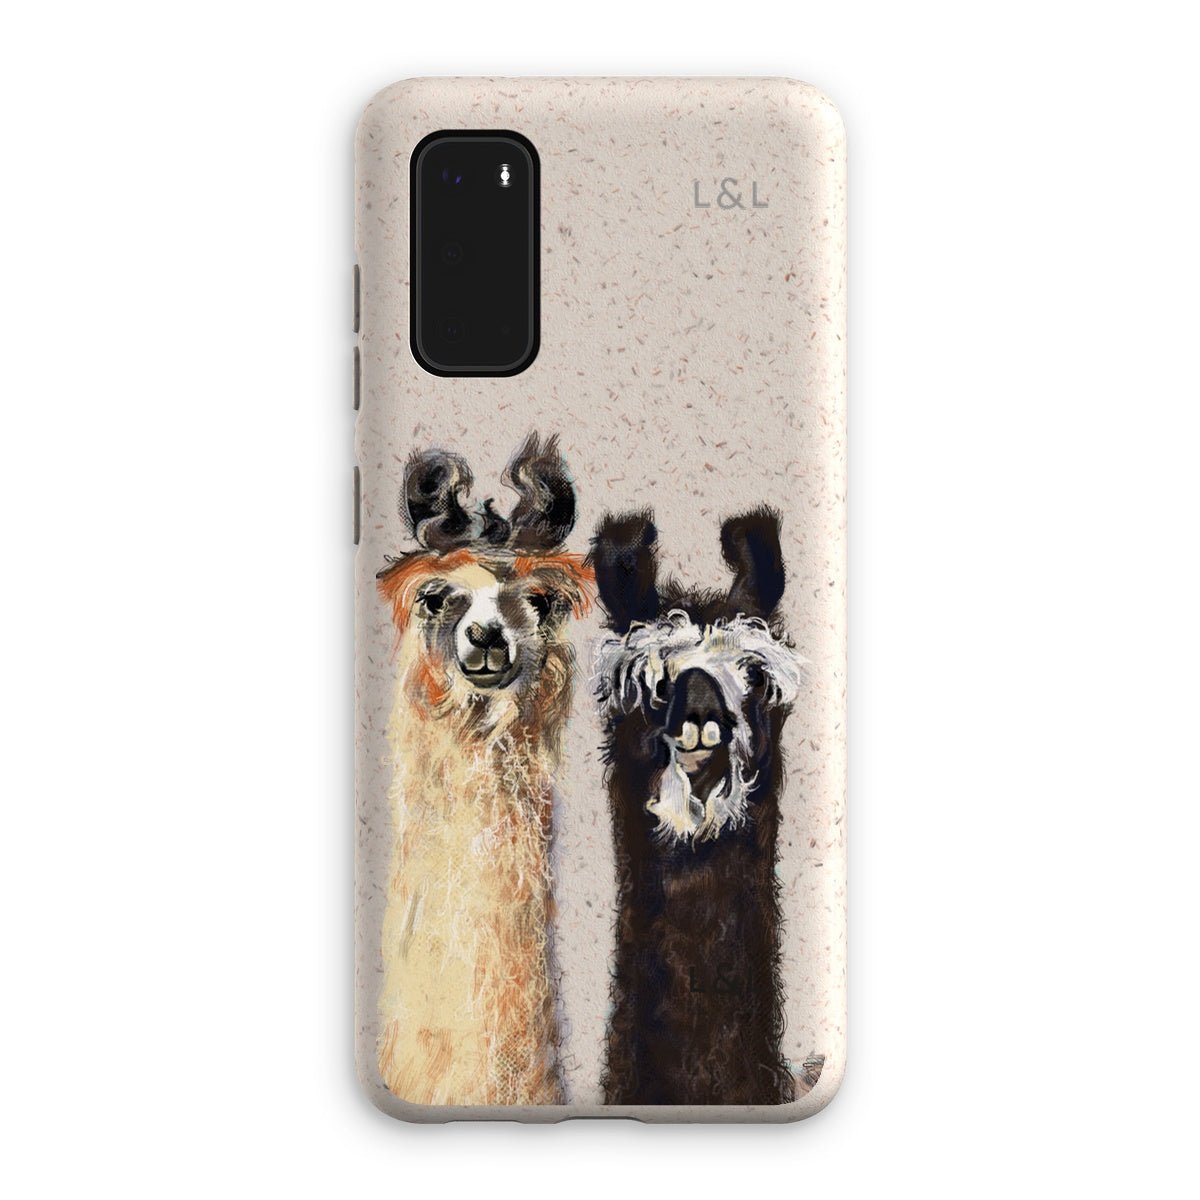 Llamas Eco Phone Case - Loam & Lore